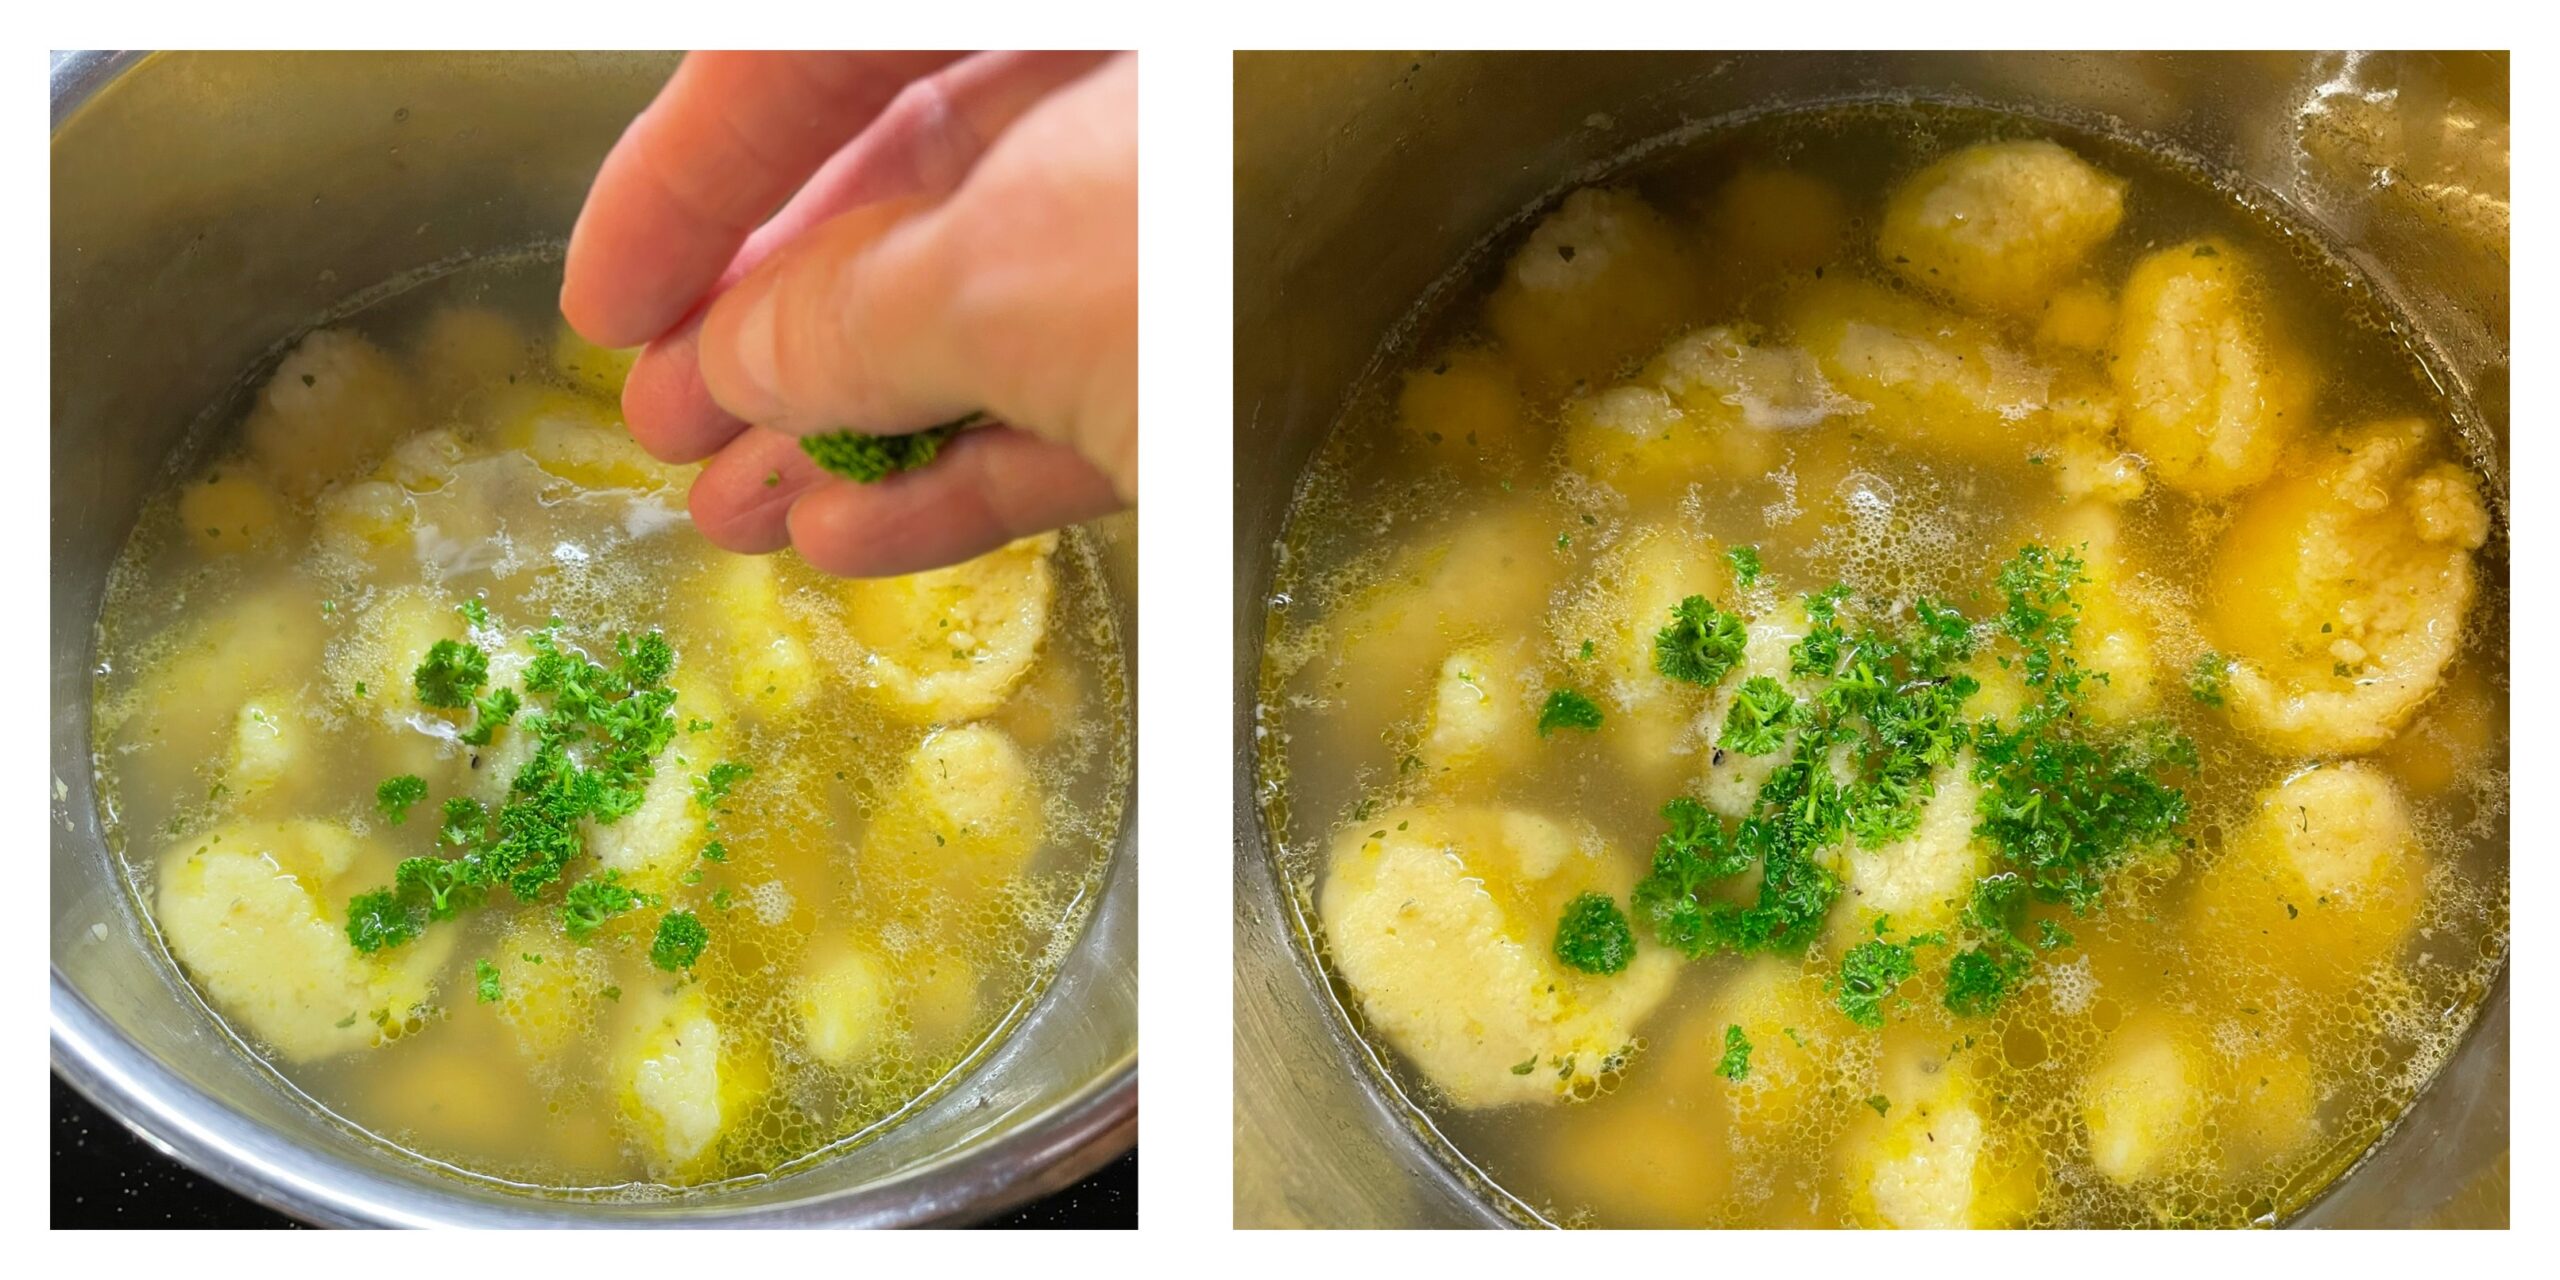 Bild zum Schritt 11 für das Bastel- und DIY-Abenteuer für Kinder: 'Jetzt kann die Suppe serviert werden.'